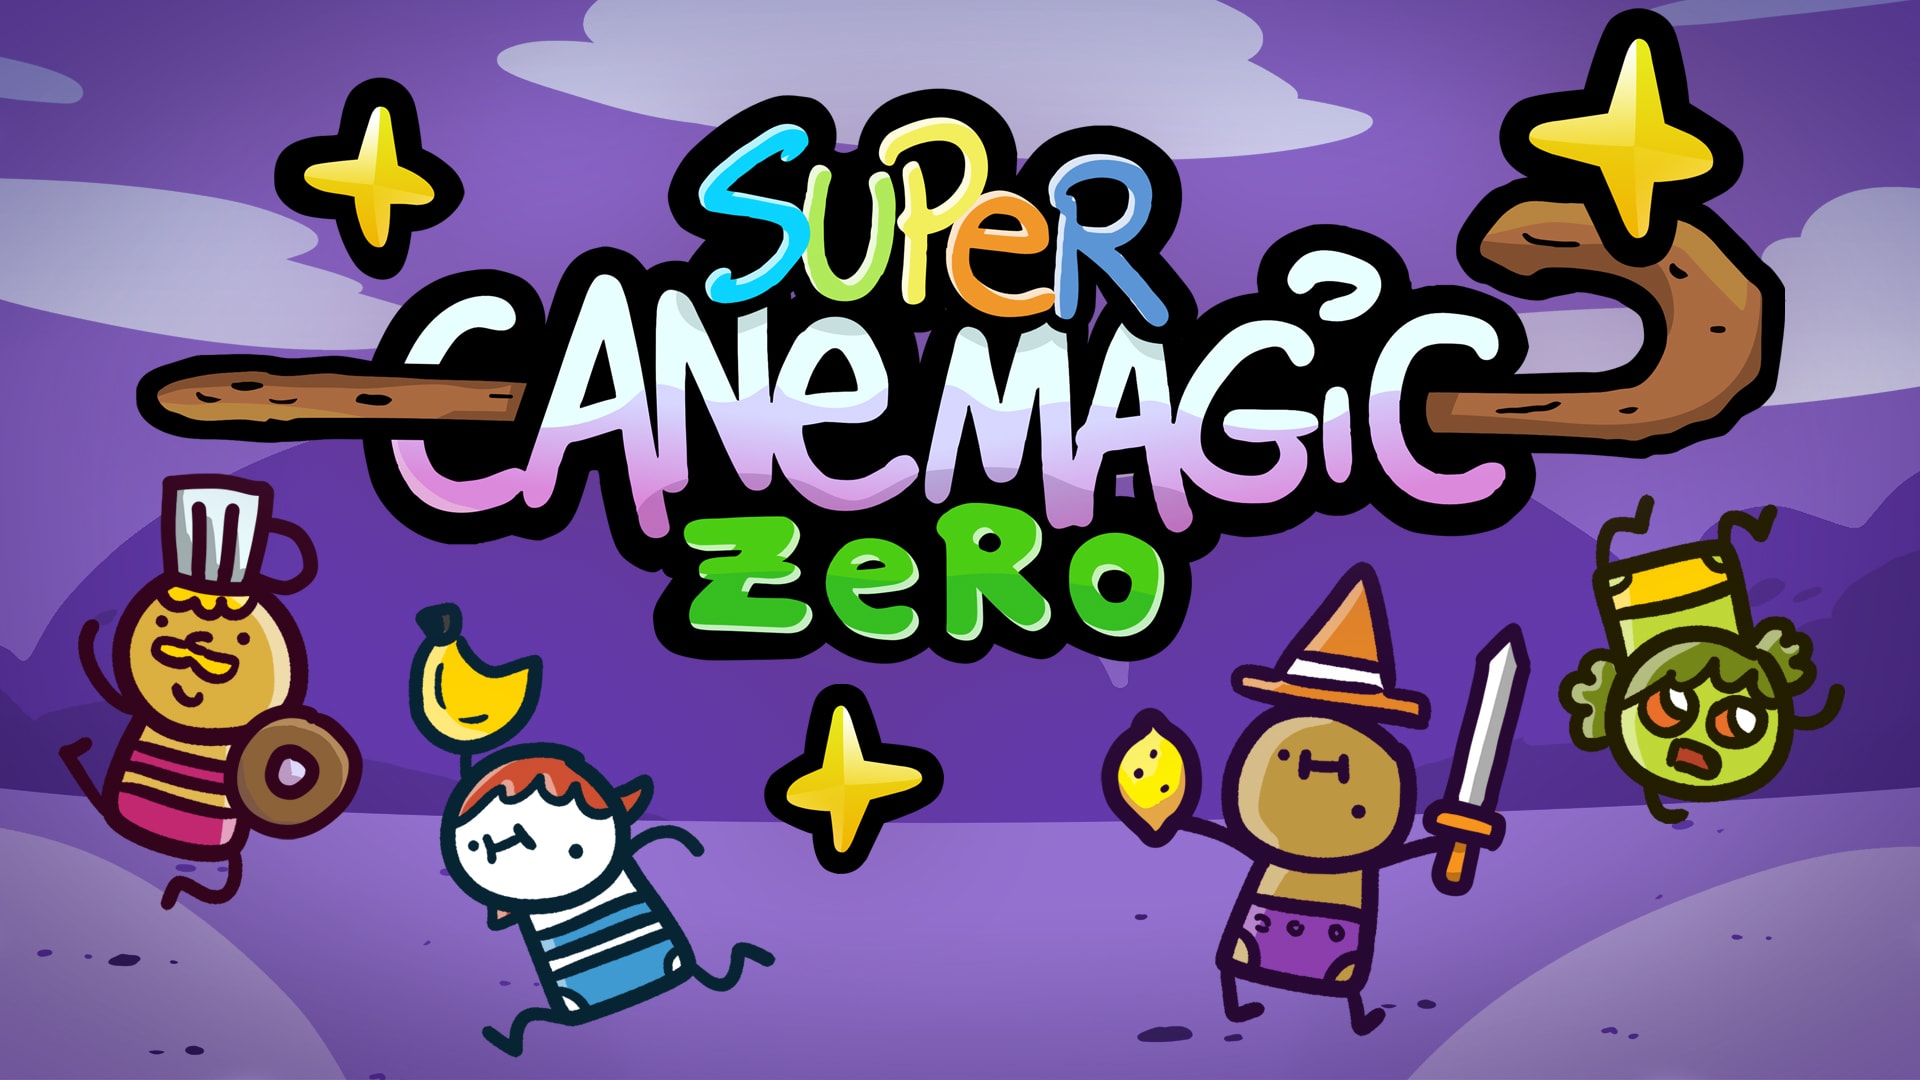 Super Cane Magic ZERO: Secret Bonus Content